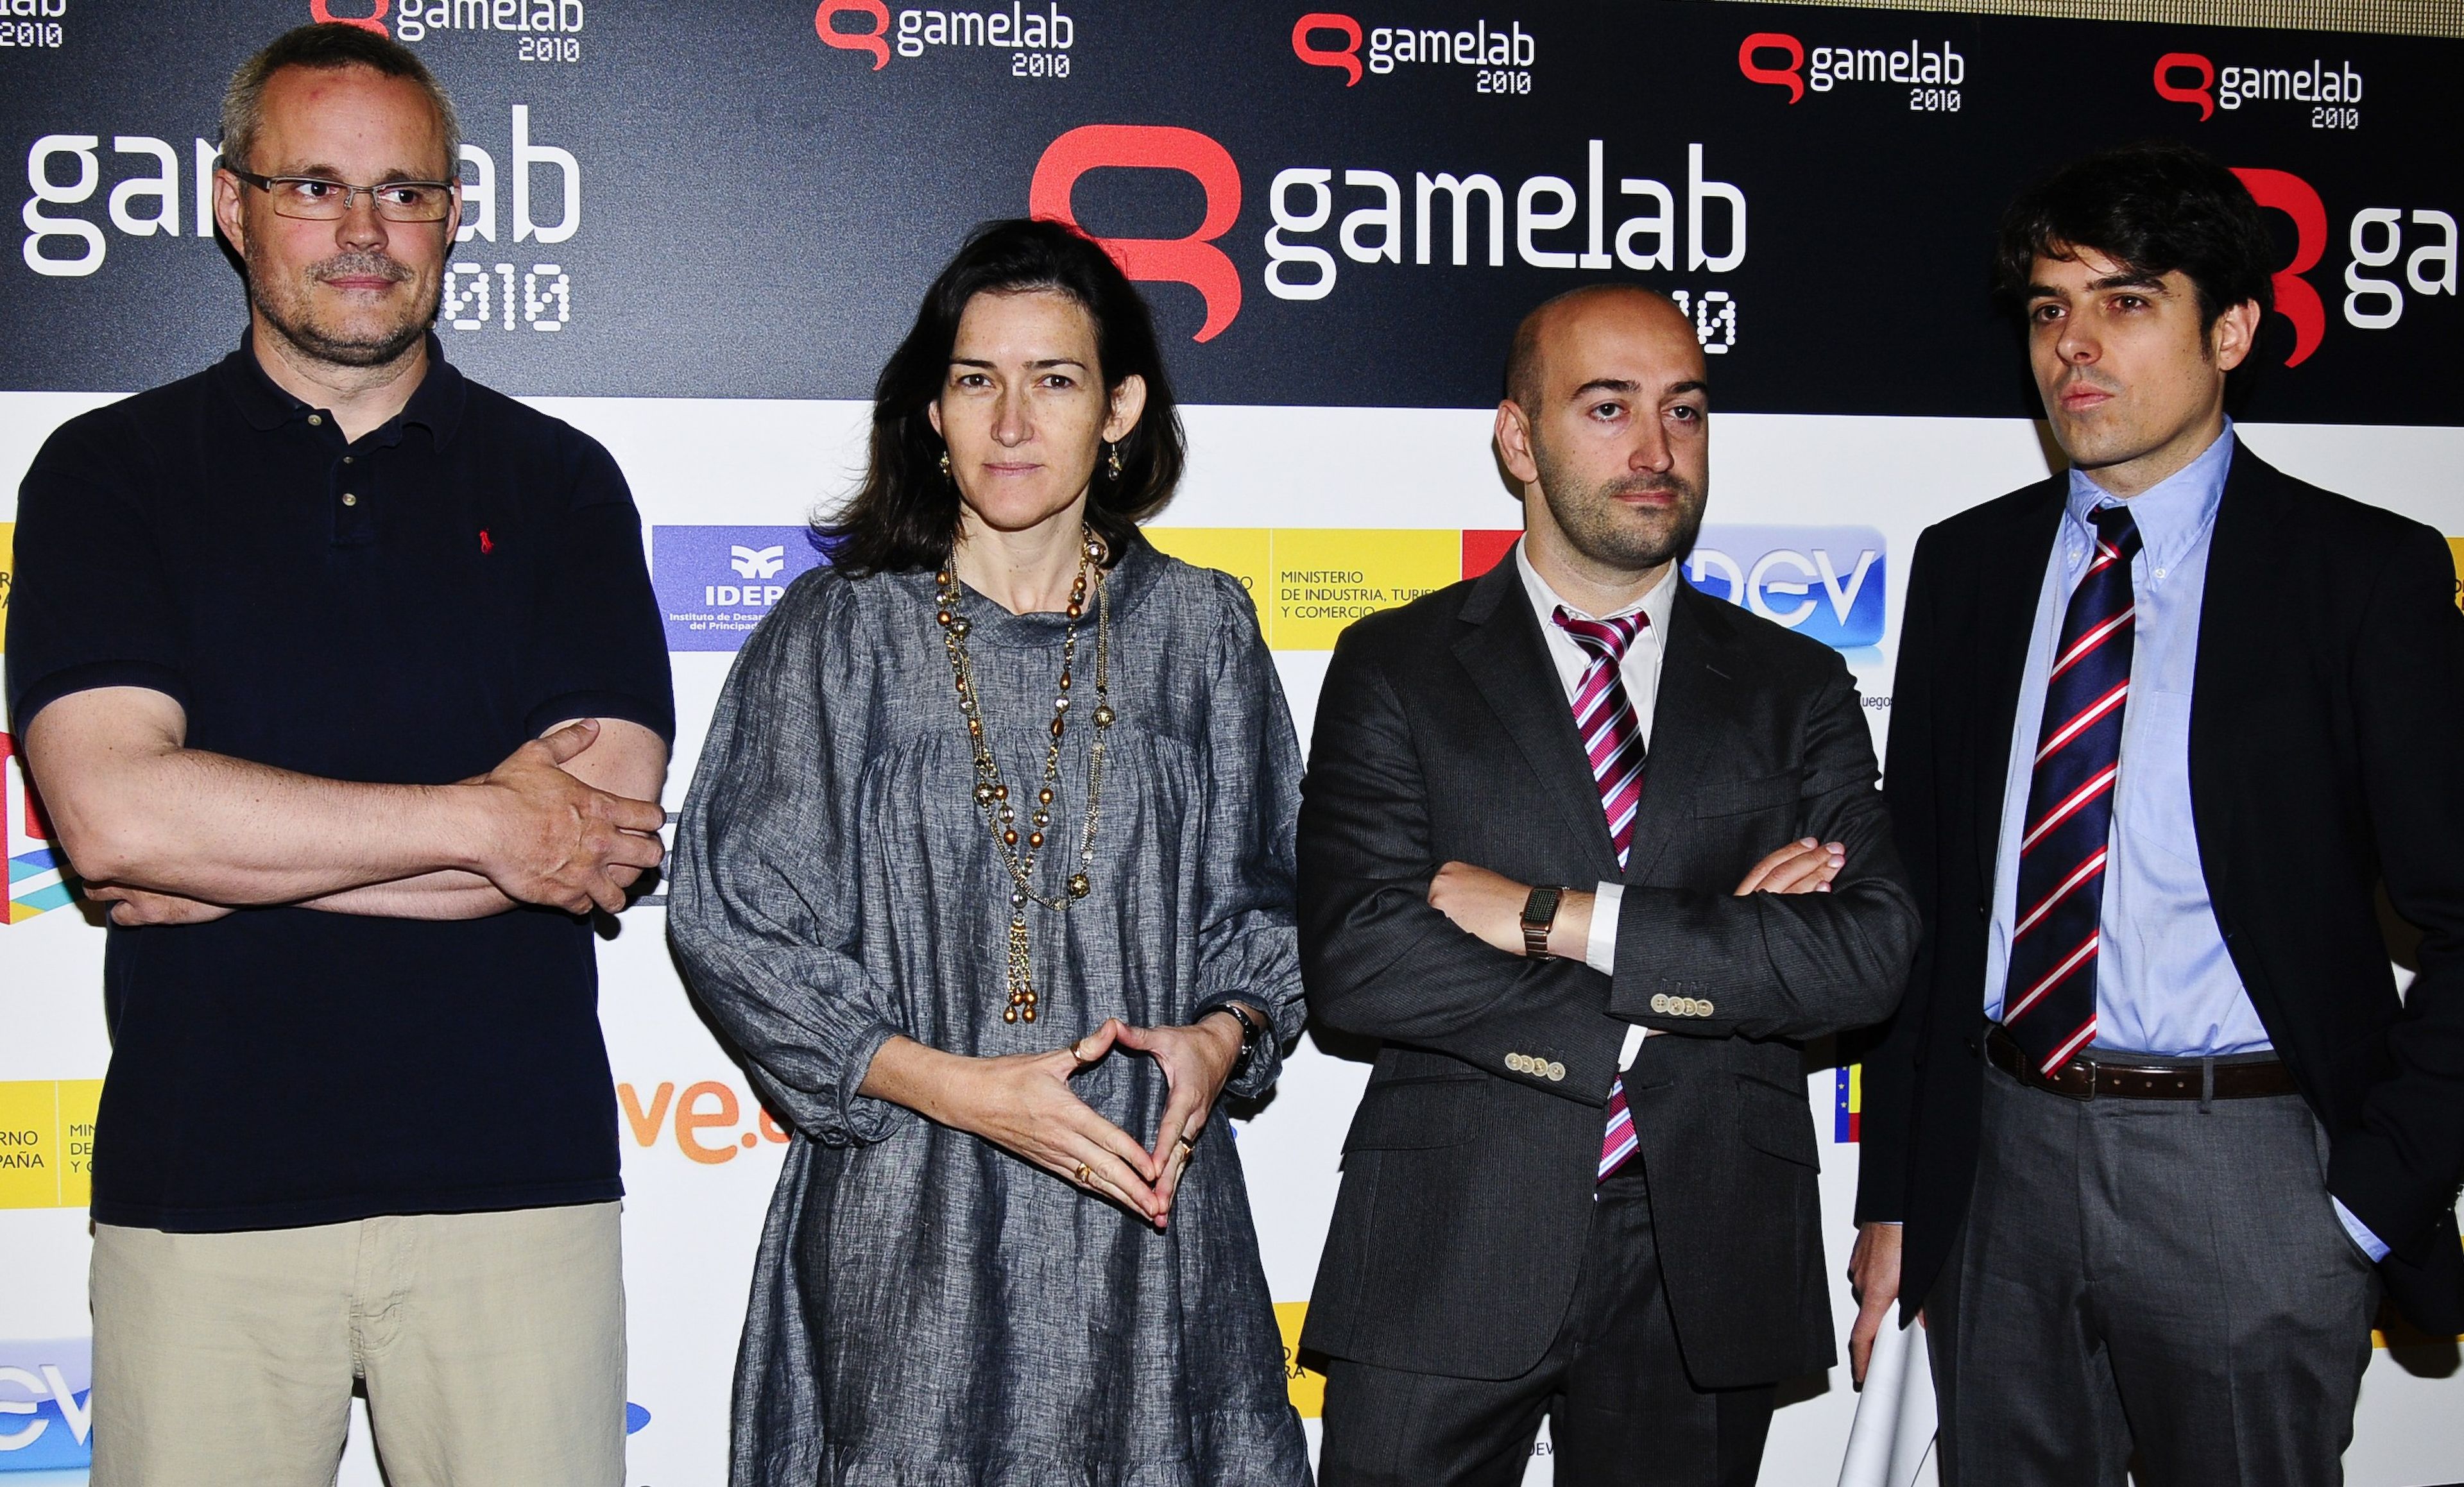 El &#039;E3 español&#039; se llama Gamelab 2010